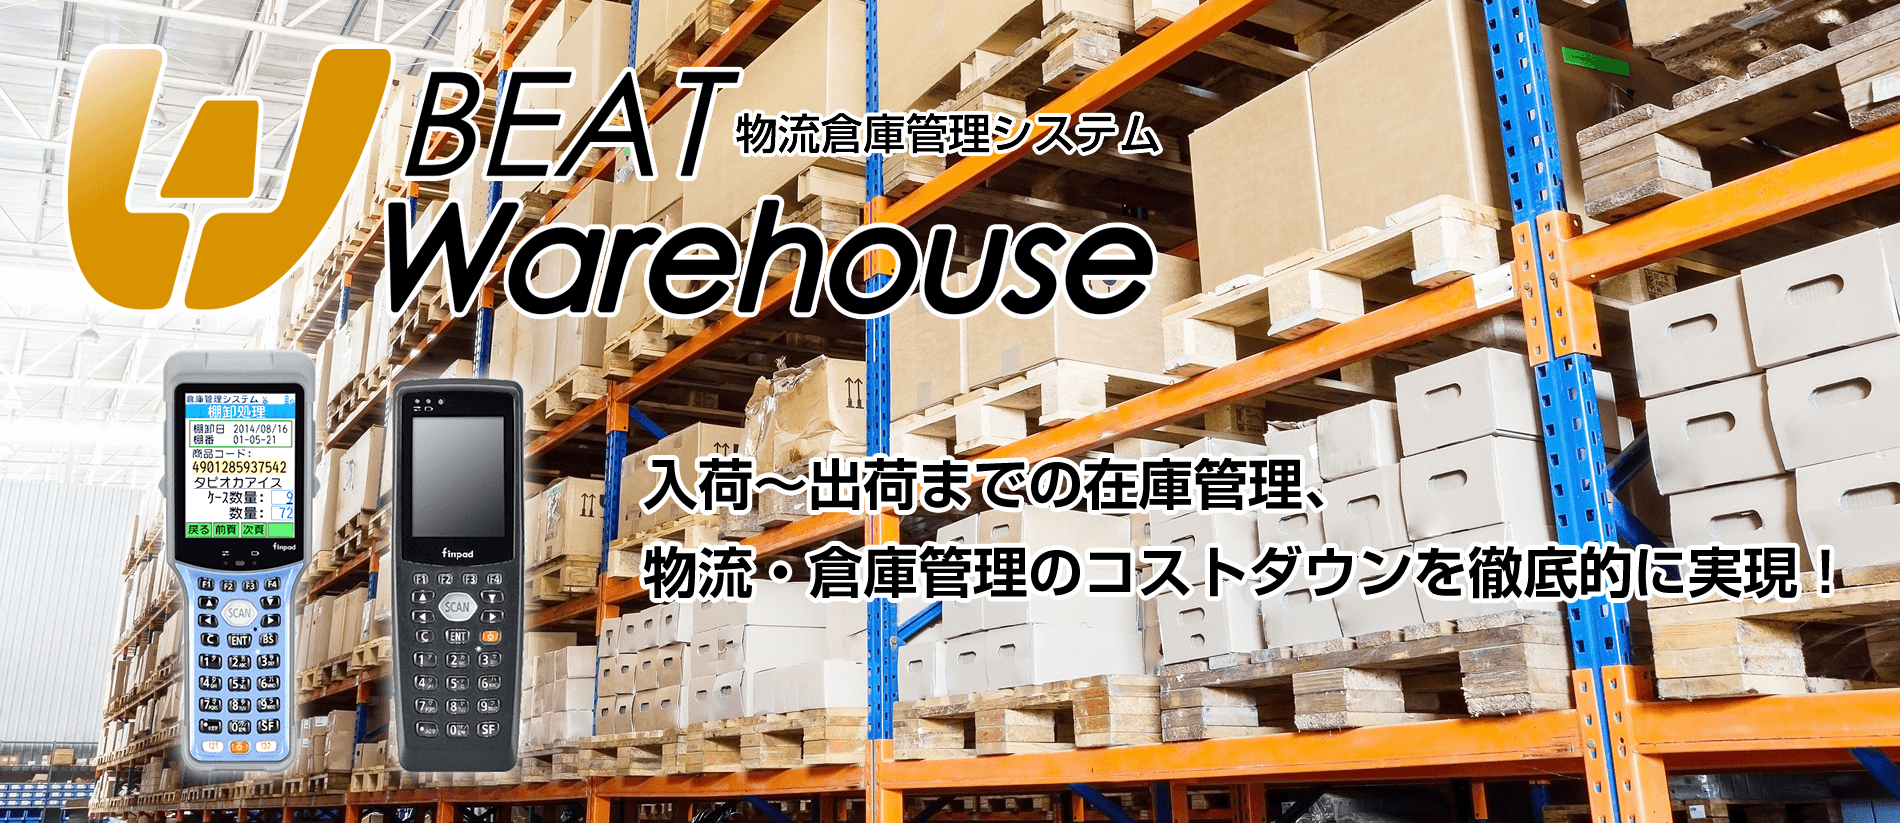 物流倉庫管理システム BEAT Warehouse